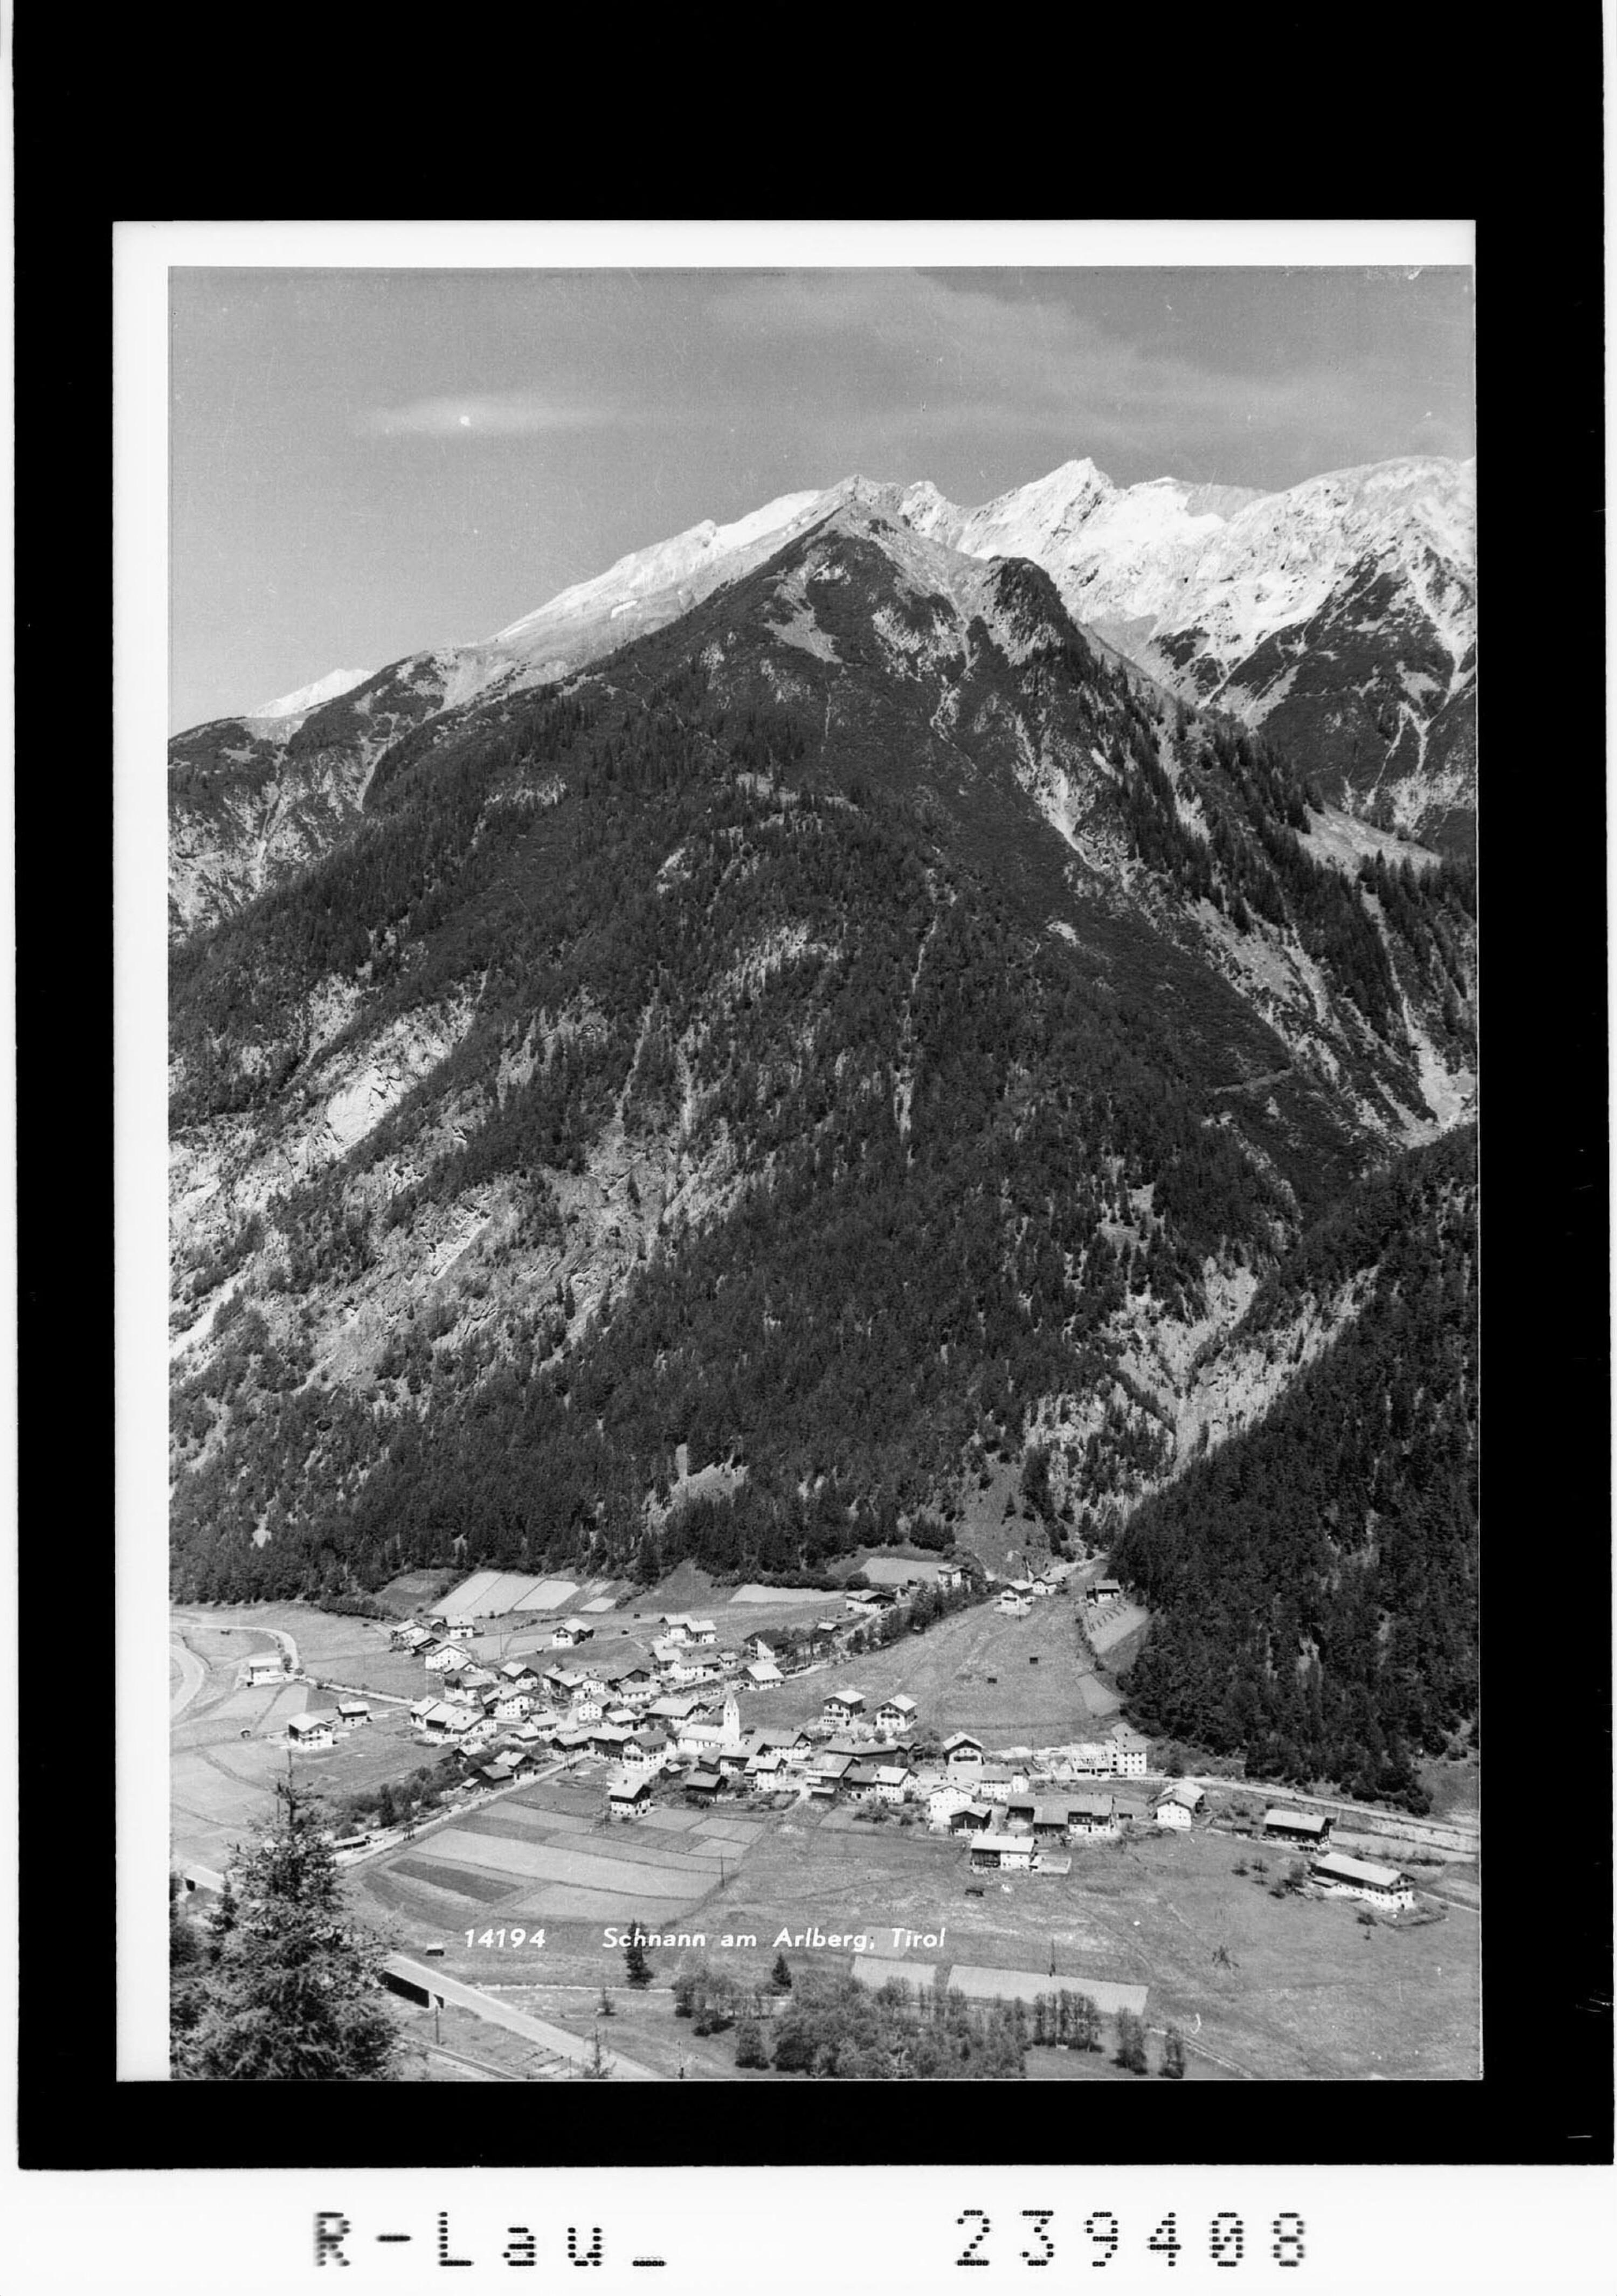 Schnann am Arlberg / Tirol></div>


    <hr>
    <div class=